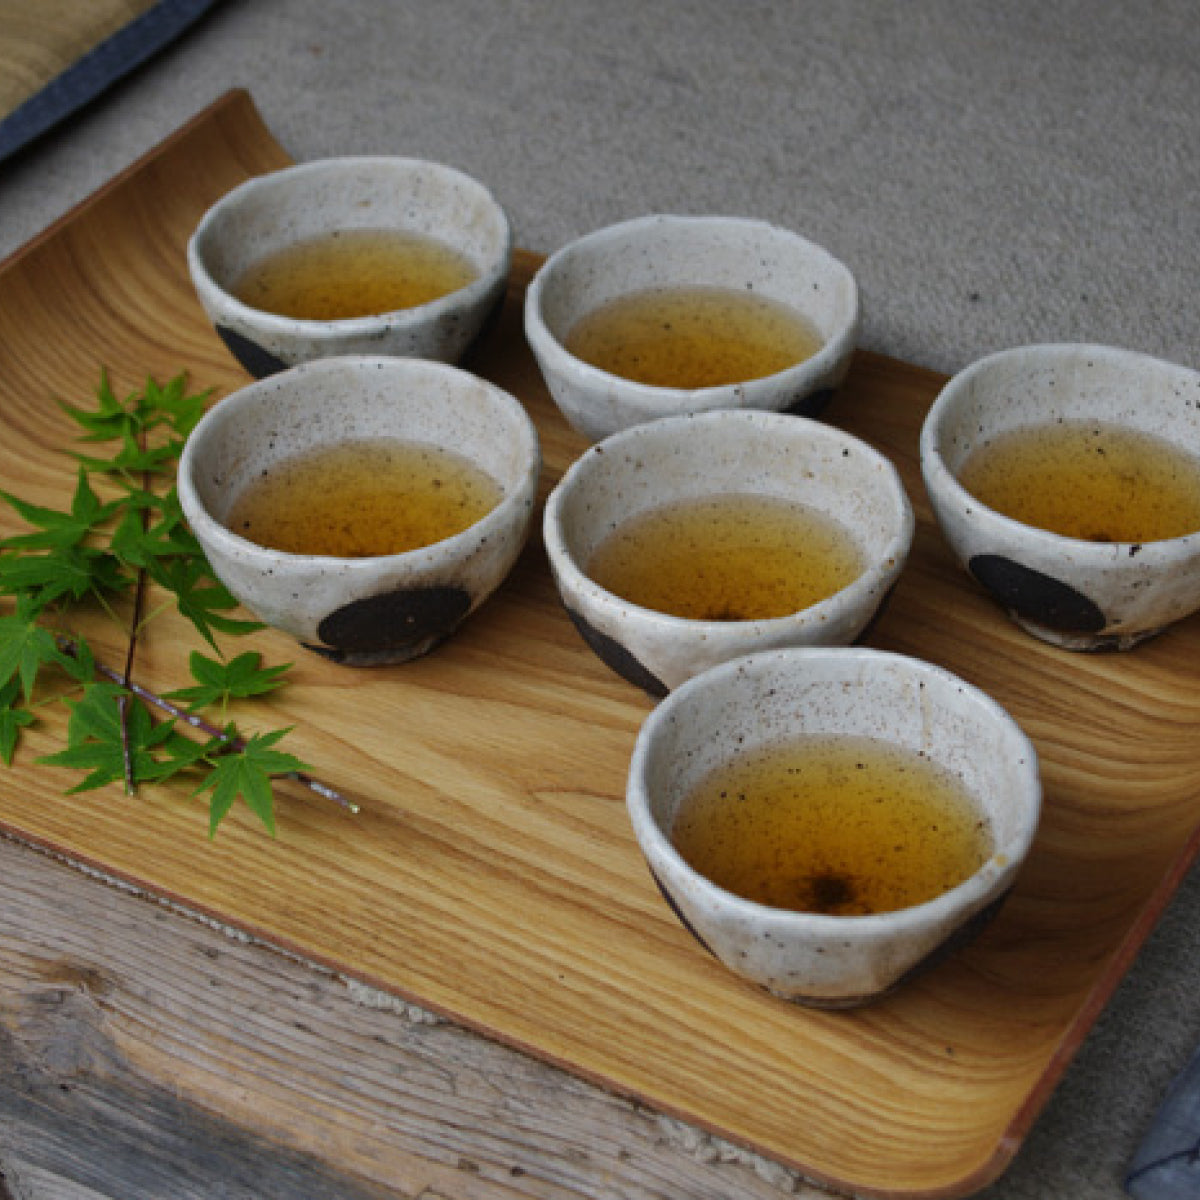 Roasted Green Tea "Hojicha" 80g/2.82oz